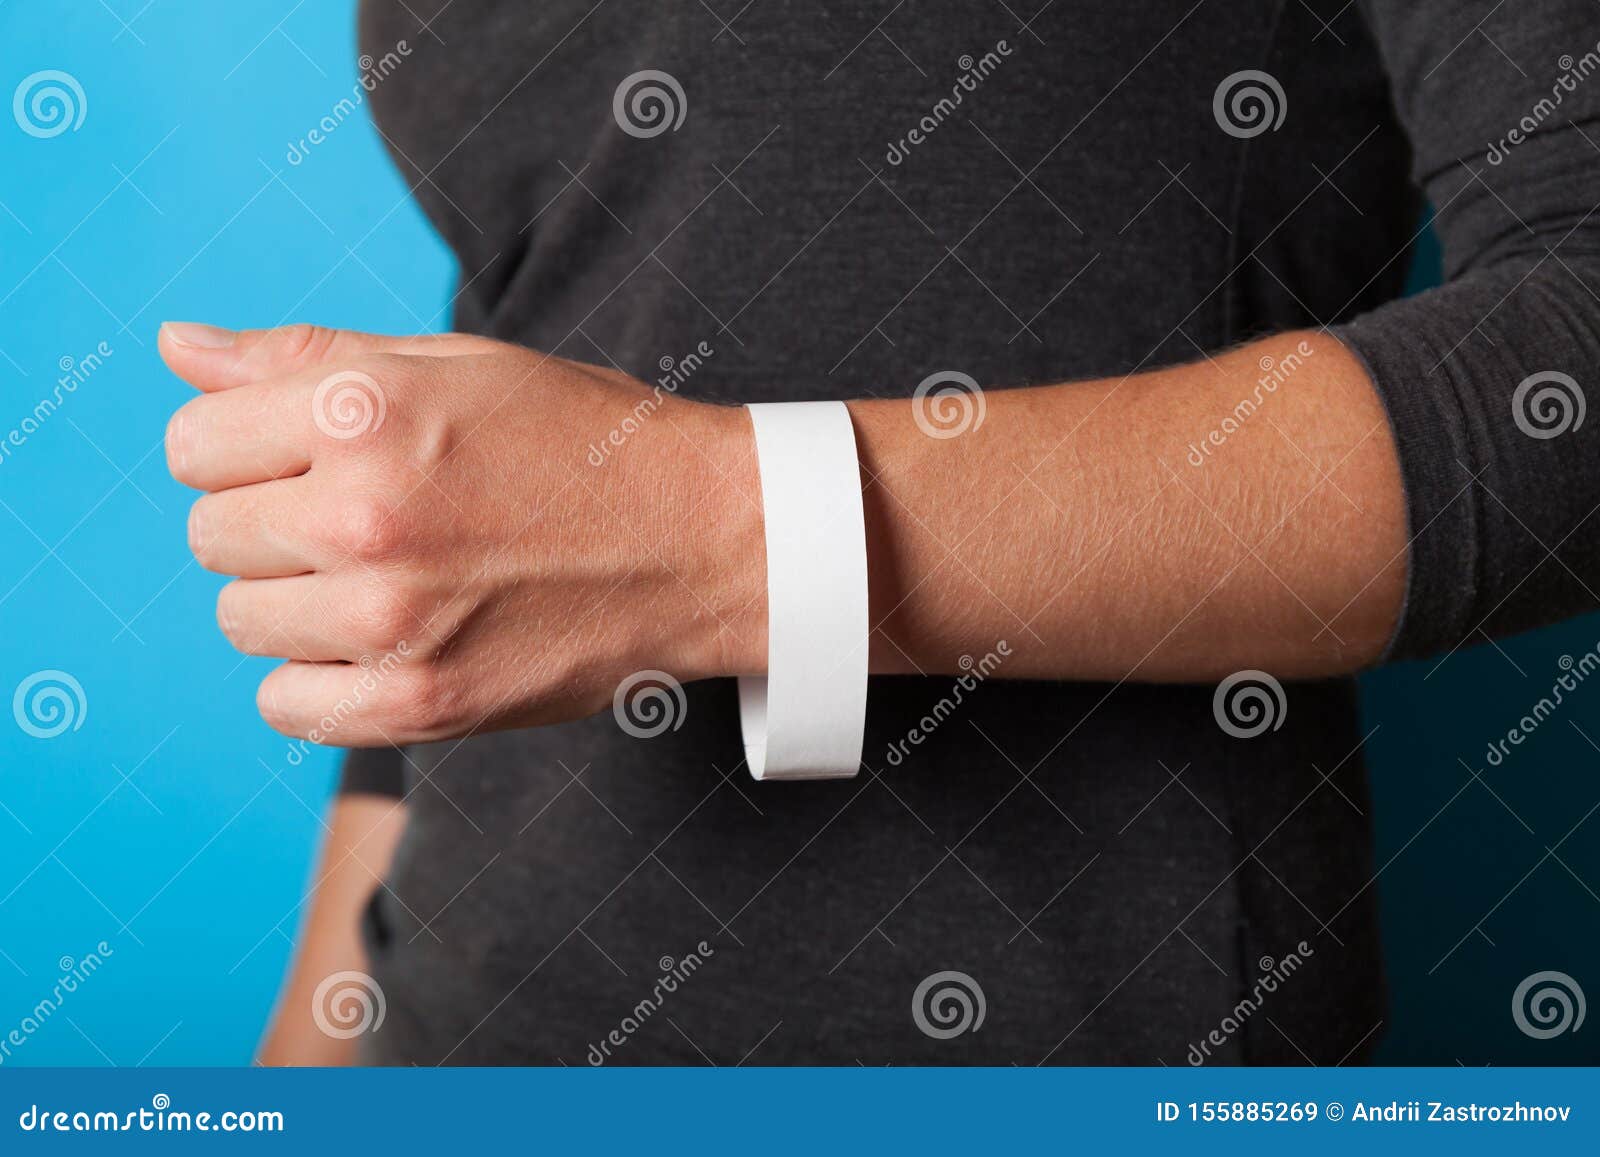 Download Concert Paper Bracelet Mockup, Event Wristband. Arm ...